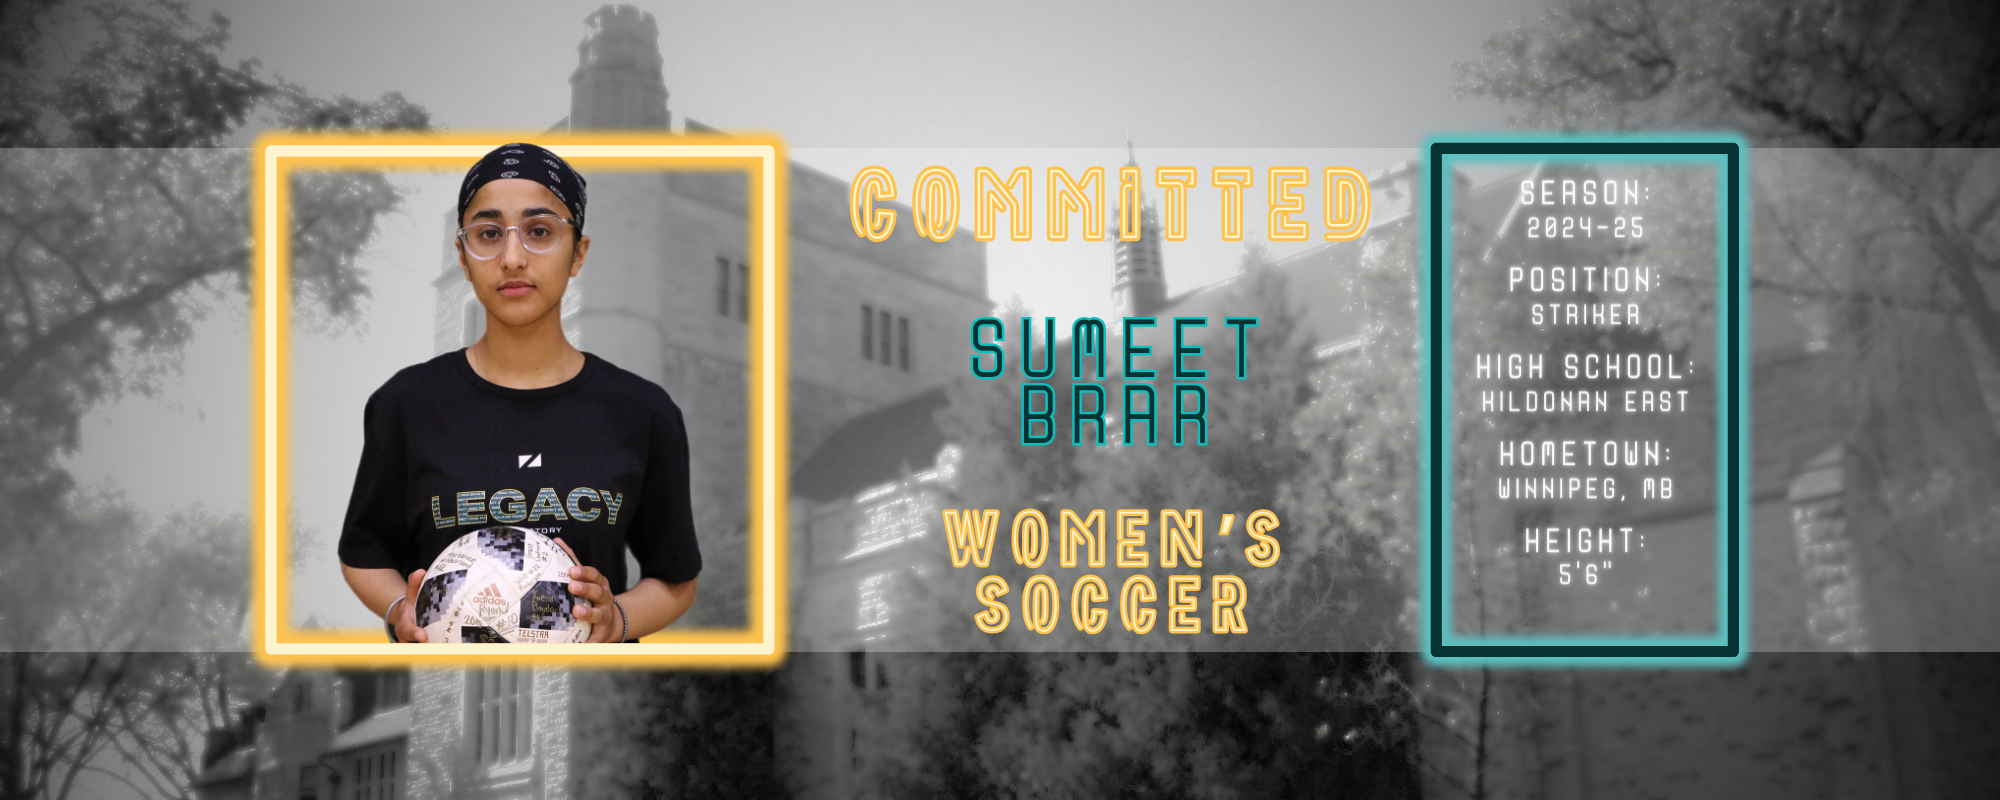 Sumeet Brar Joins Blazers Women's Soccer Alongside Twin